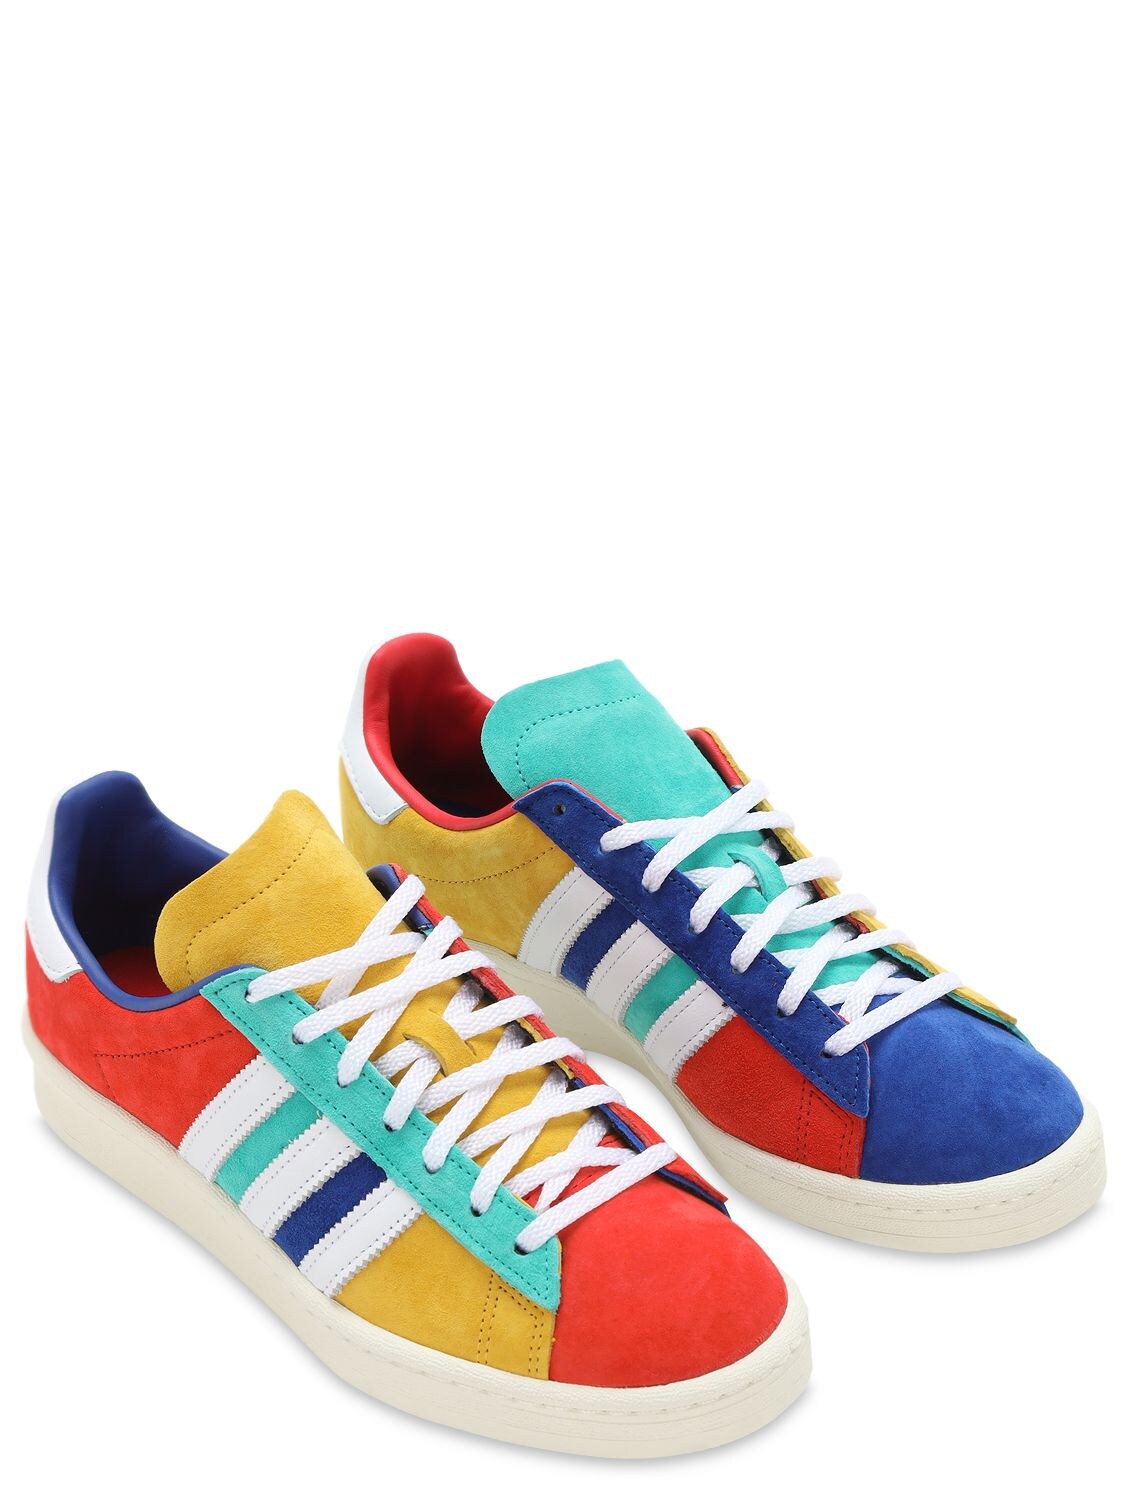 Adidas Originals Campus 80s Sneakers In Multicolor